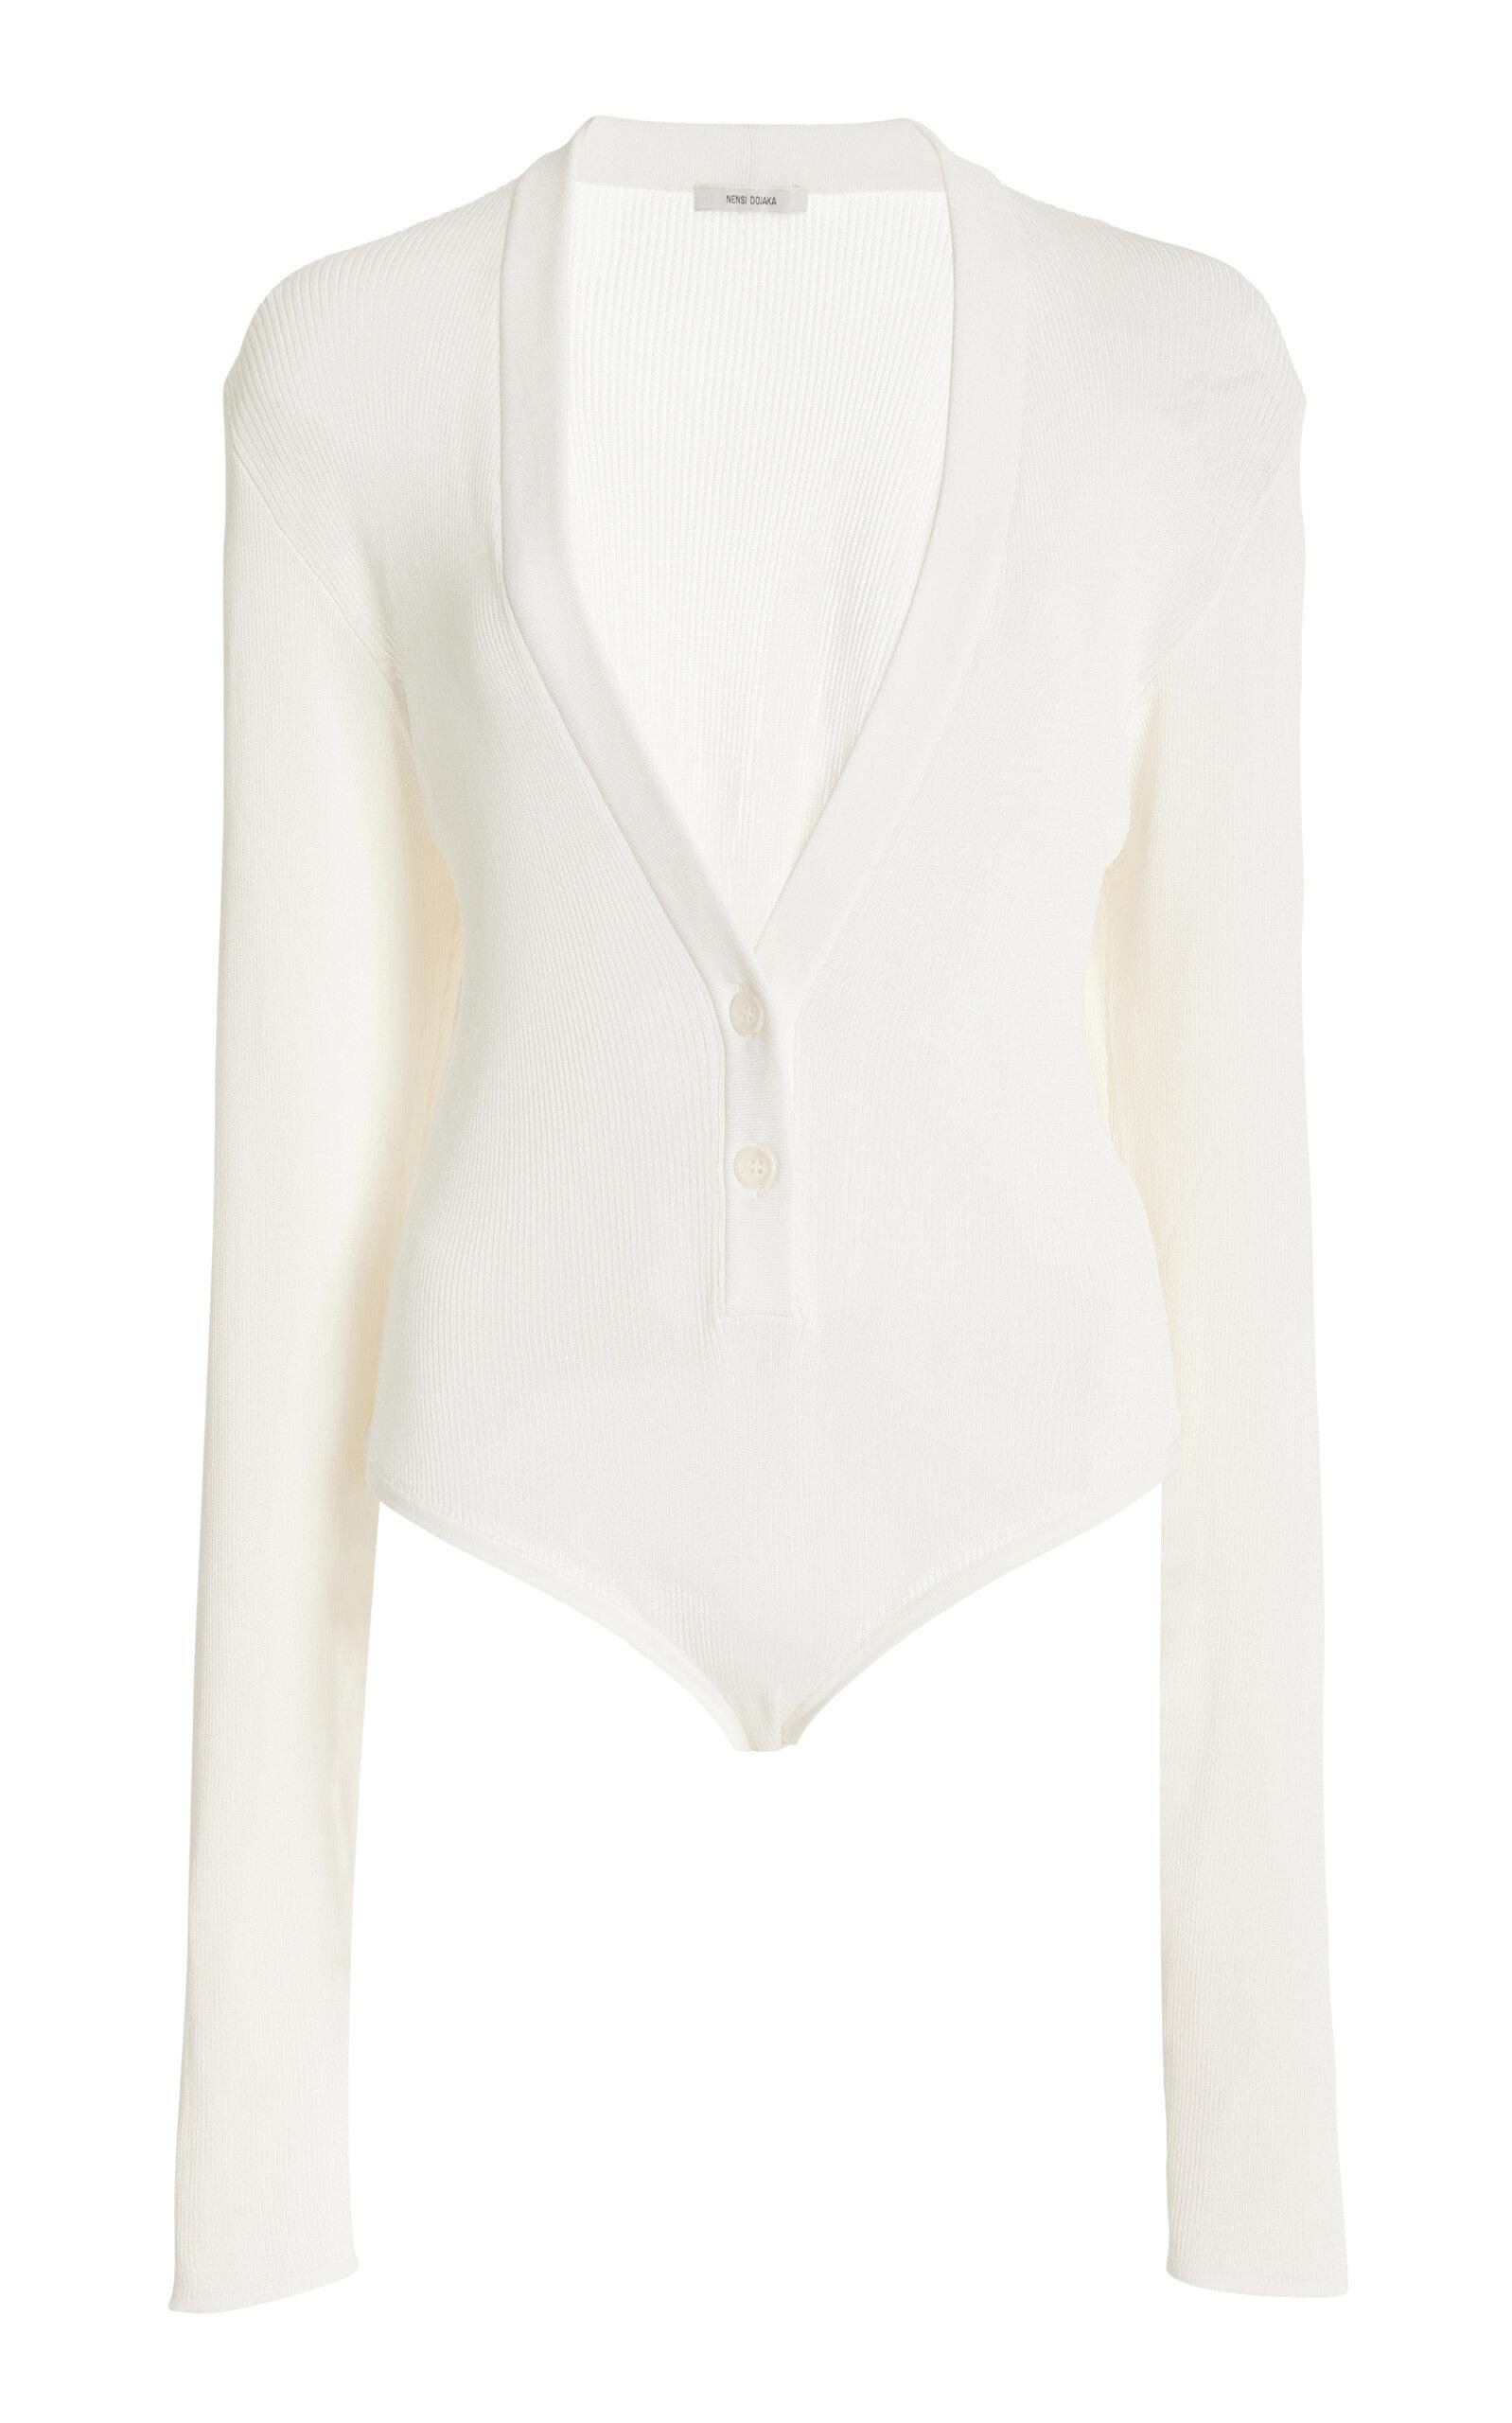 Nensi Dojaka - Ribbed-Knit Cardigan Bodysuit - White - M - Moda Operandi by NENSI DOJAKA